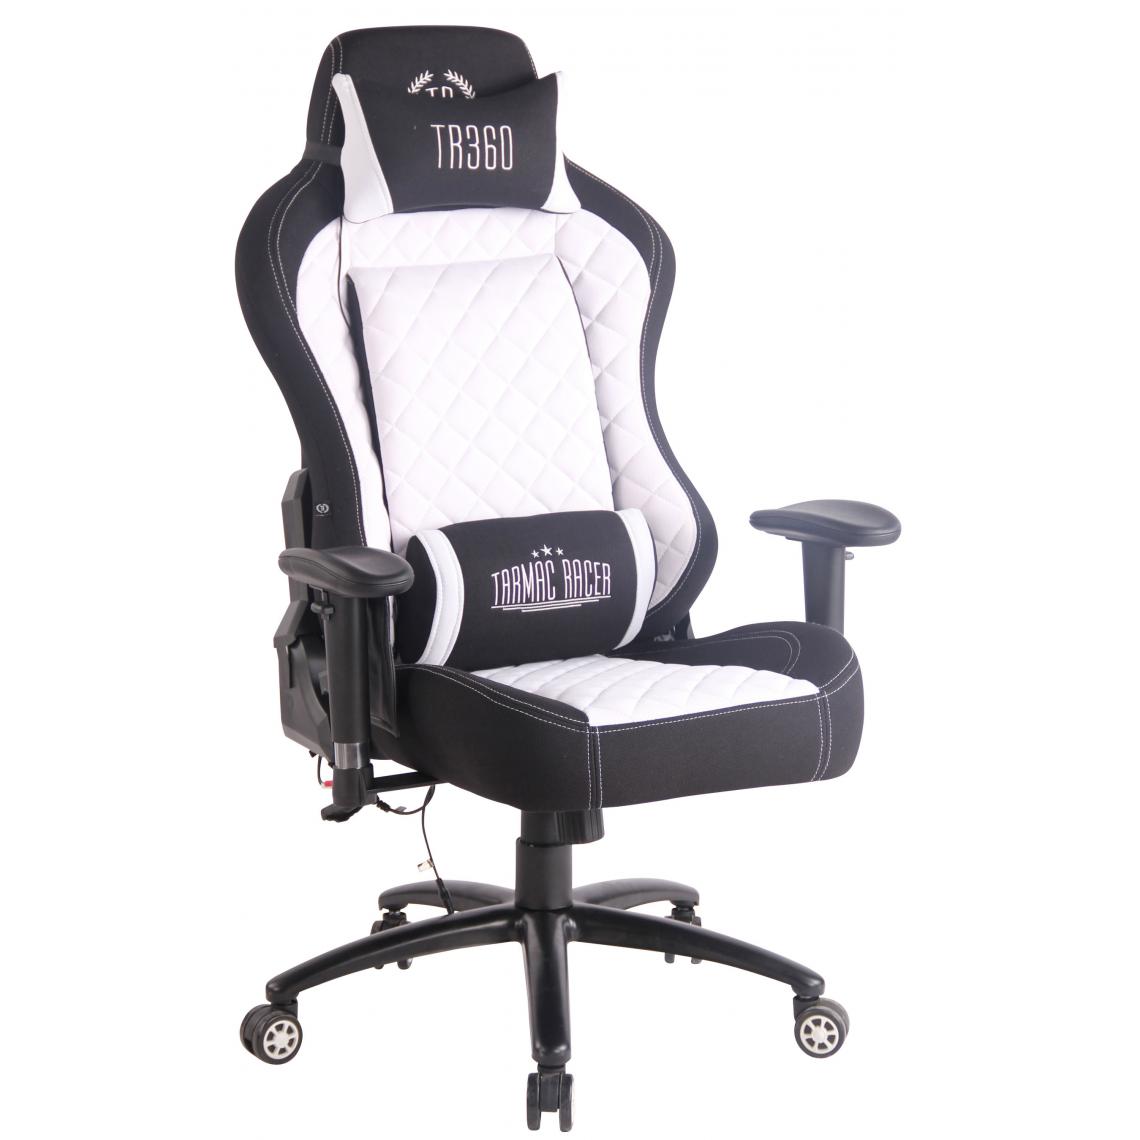 Icaverne - sublime Chaise de bureau serie Yaren XM en tissu couleur noir et blanc - Chaises